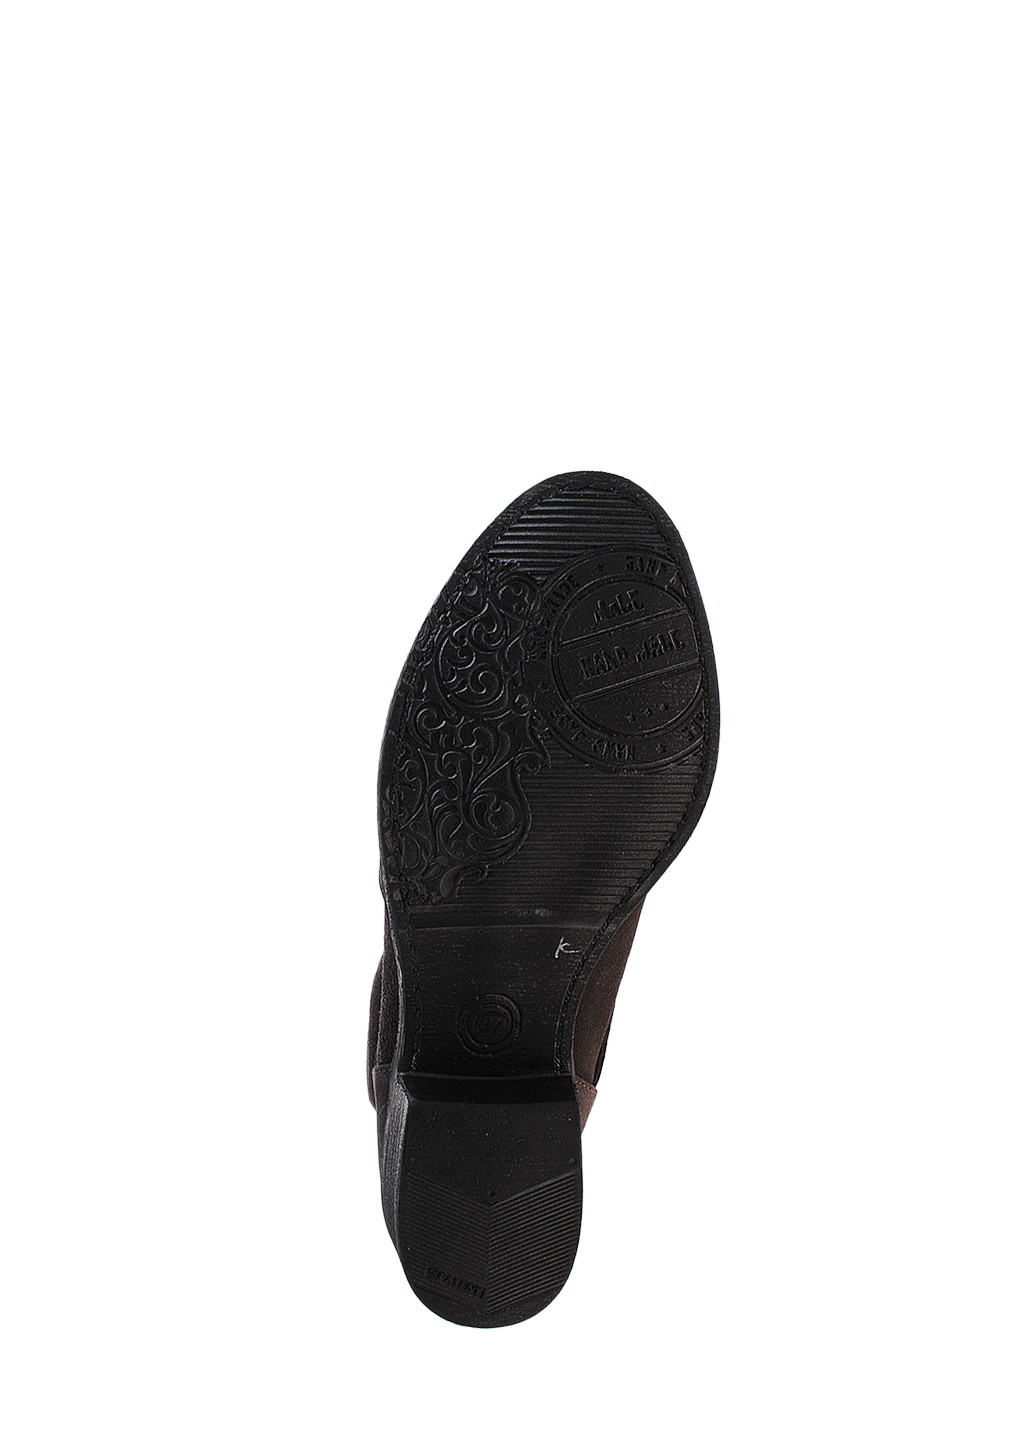 Зимние ботинки r2193p-11 капучино Crisma из натуральной замши